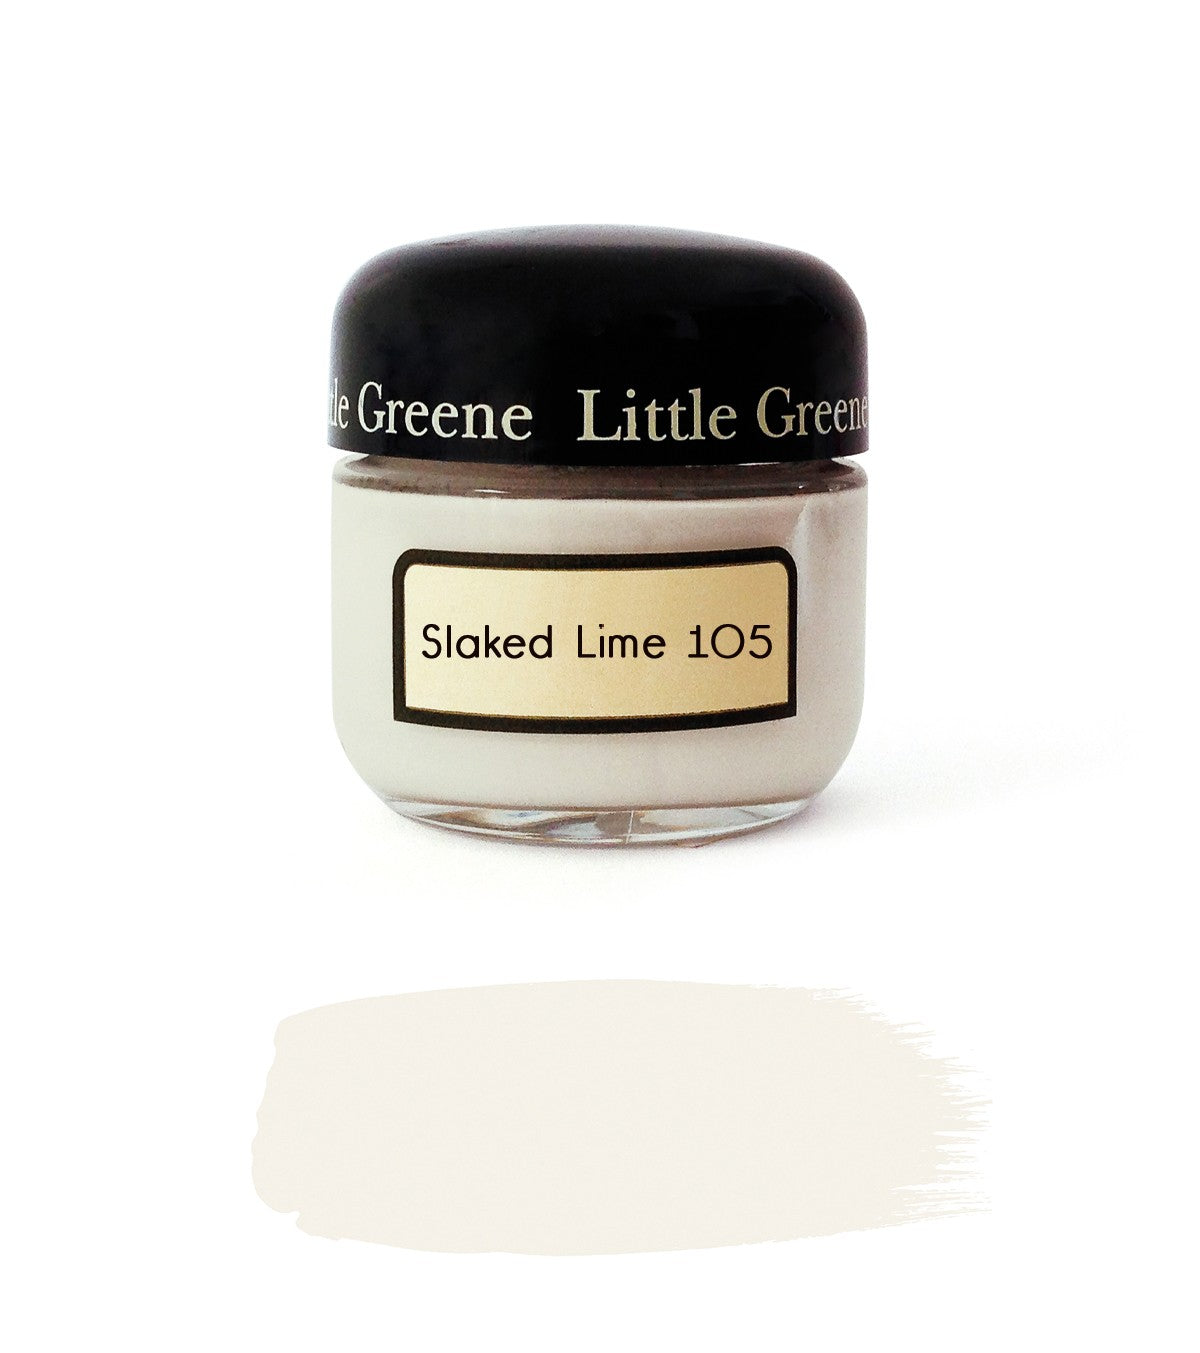 Little Greene paint - Slakerd lime (105)